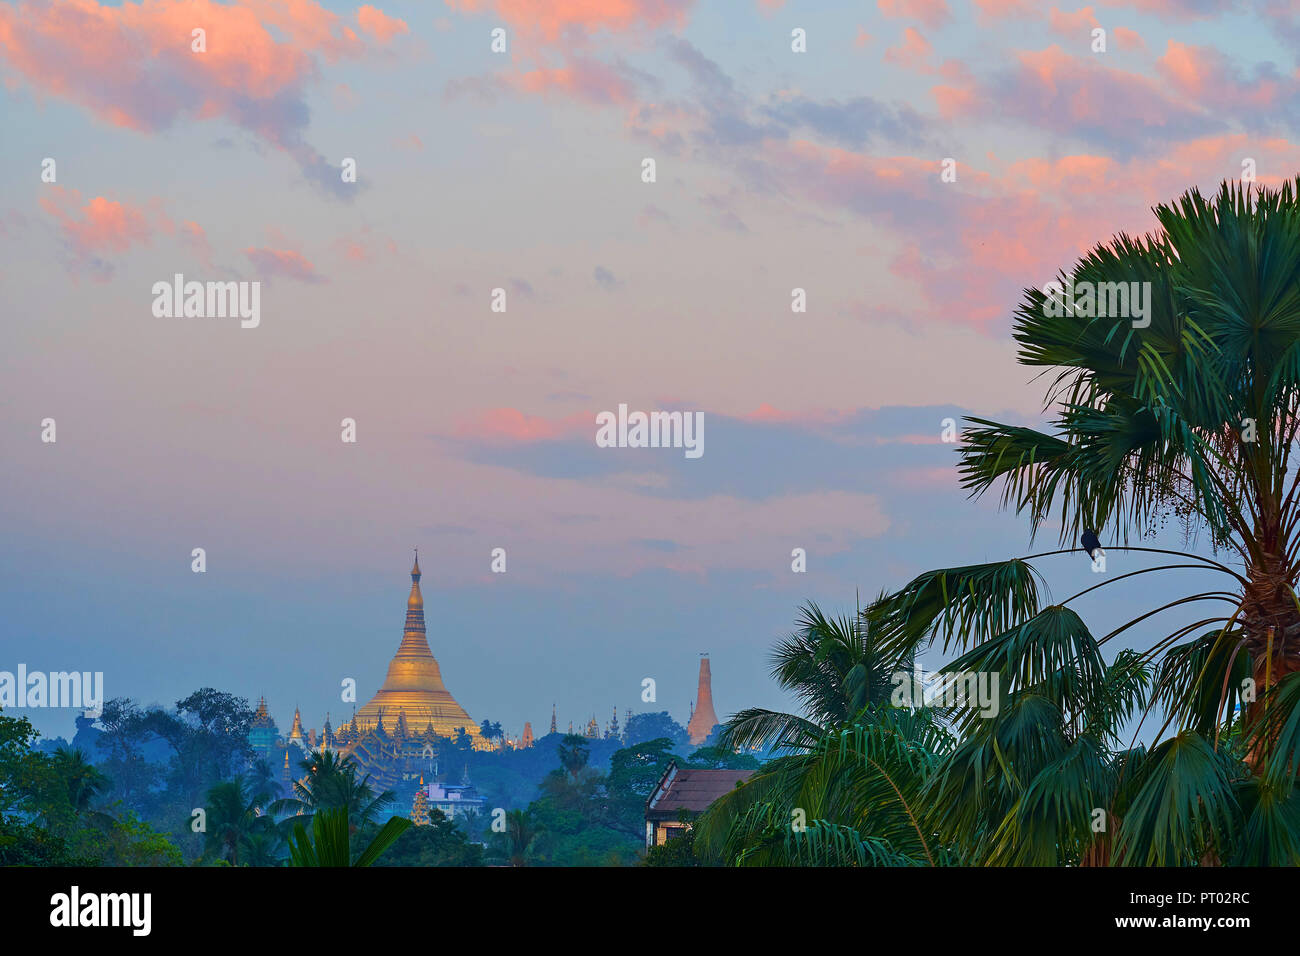 Le lever du soleil Ciel avec nuages colorés lumineux au-dessus de la stupa doré de la pagode Shwedagon Zedi Daw, Bahan township, au Myanmar. Banque D'Images